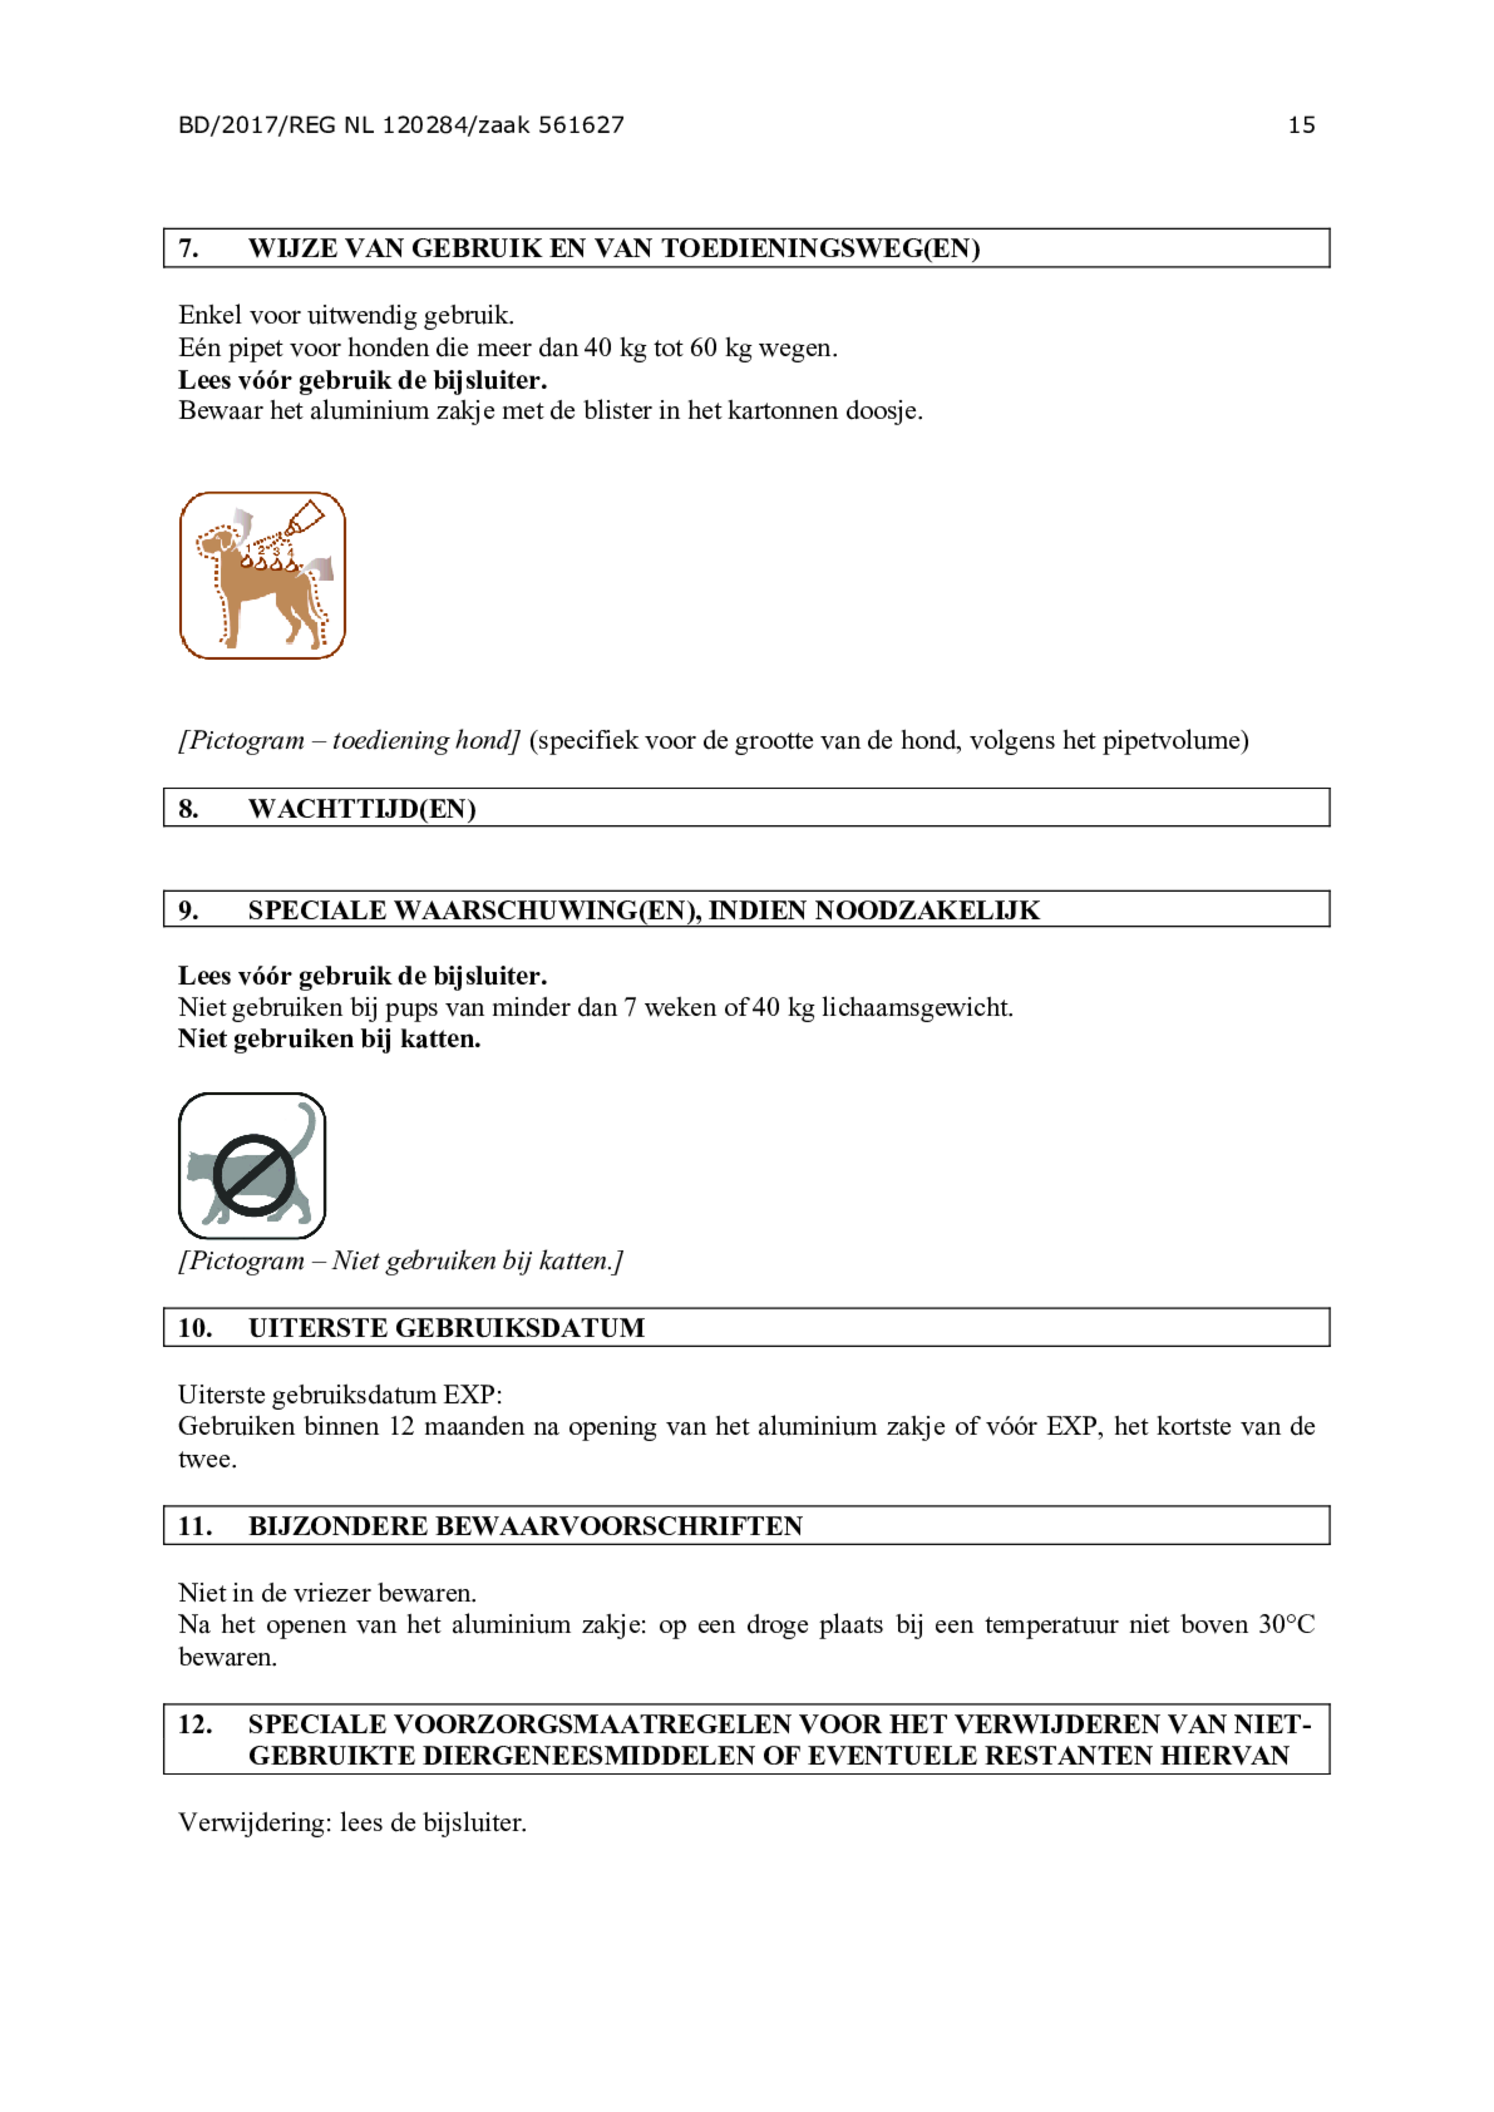 Hond 600/3000 Spot-on Solution afbeelding van document #15, gebruiksaanwijzing